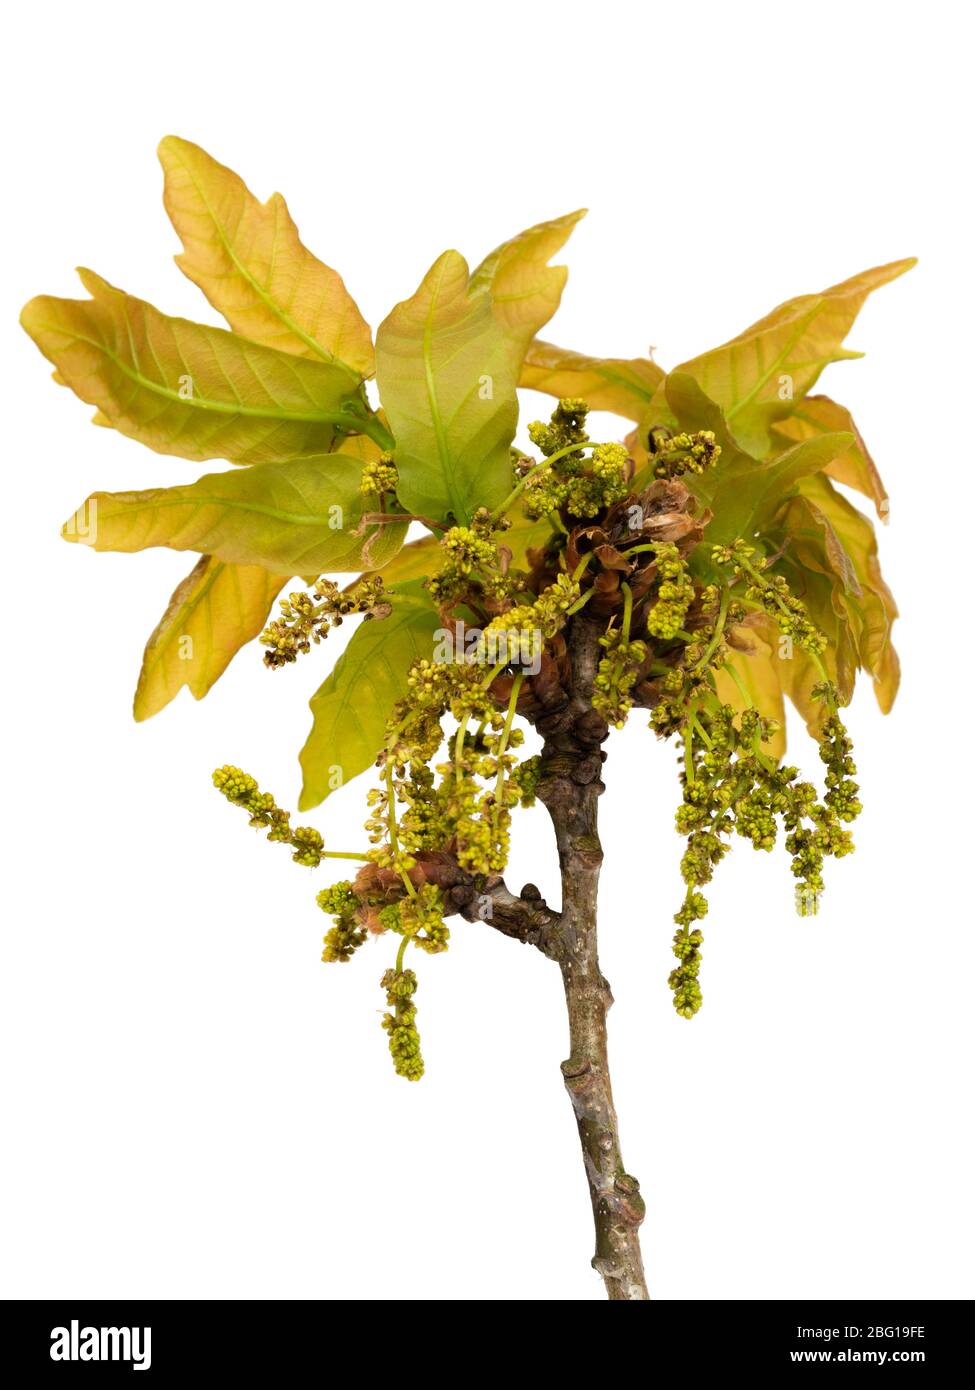 Fleurs printanières pollinisées par le vent et feuilles émergeantes du chêne pédunculate, Quercus robur, sur fond blanc Banque D'Images